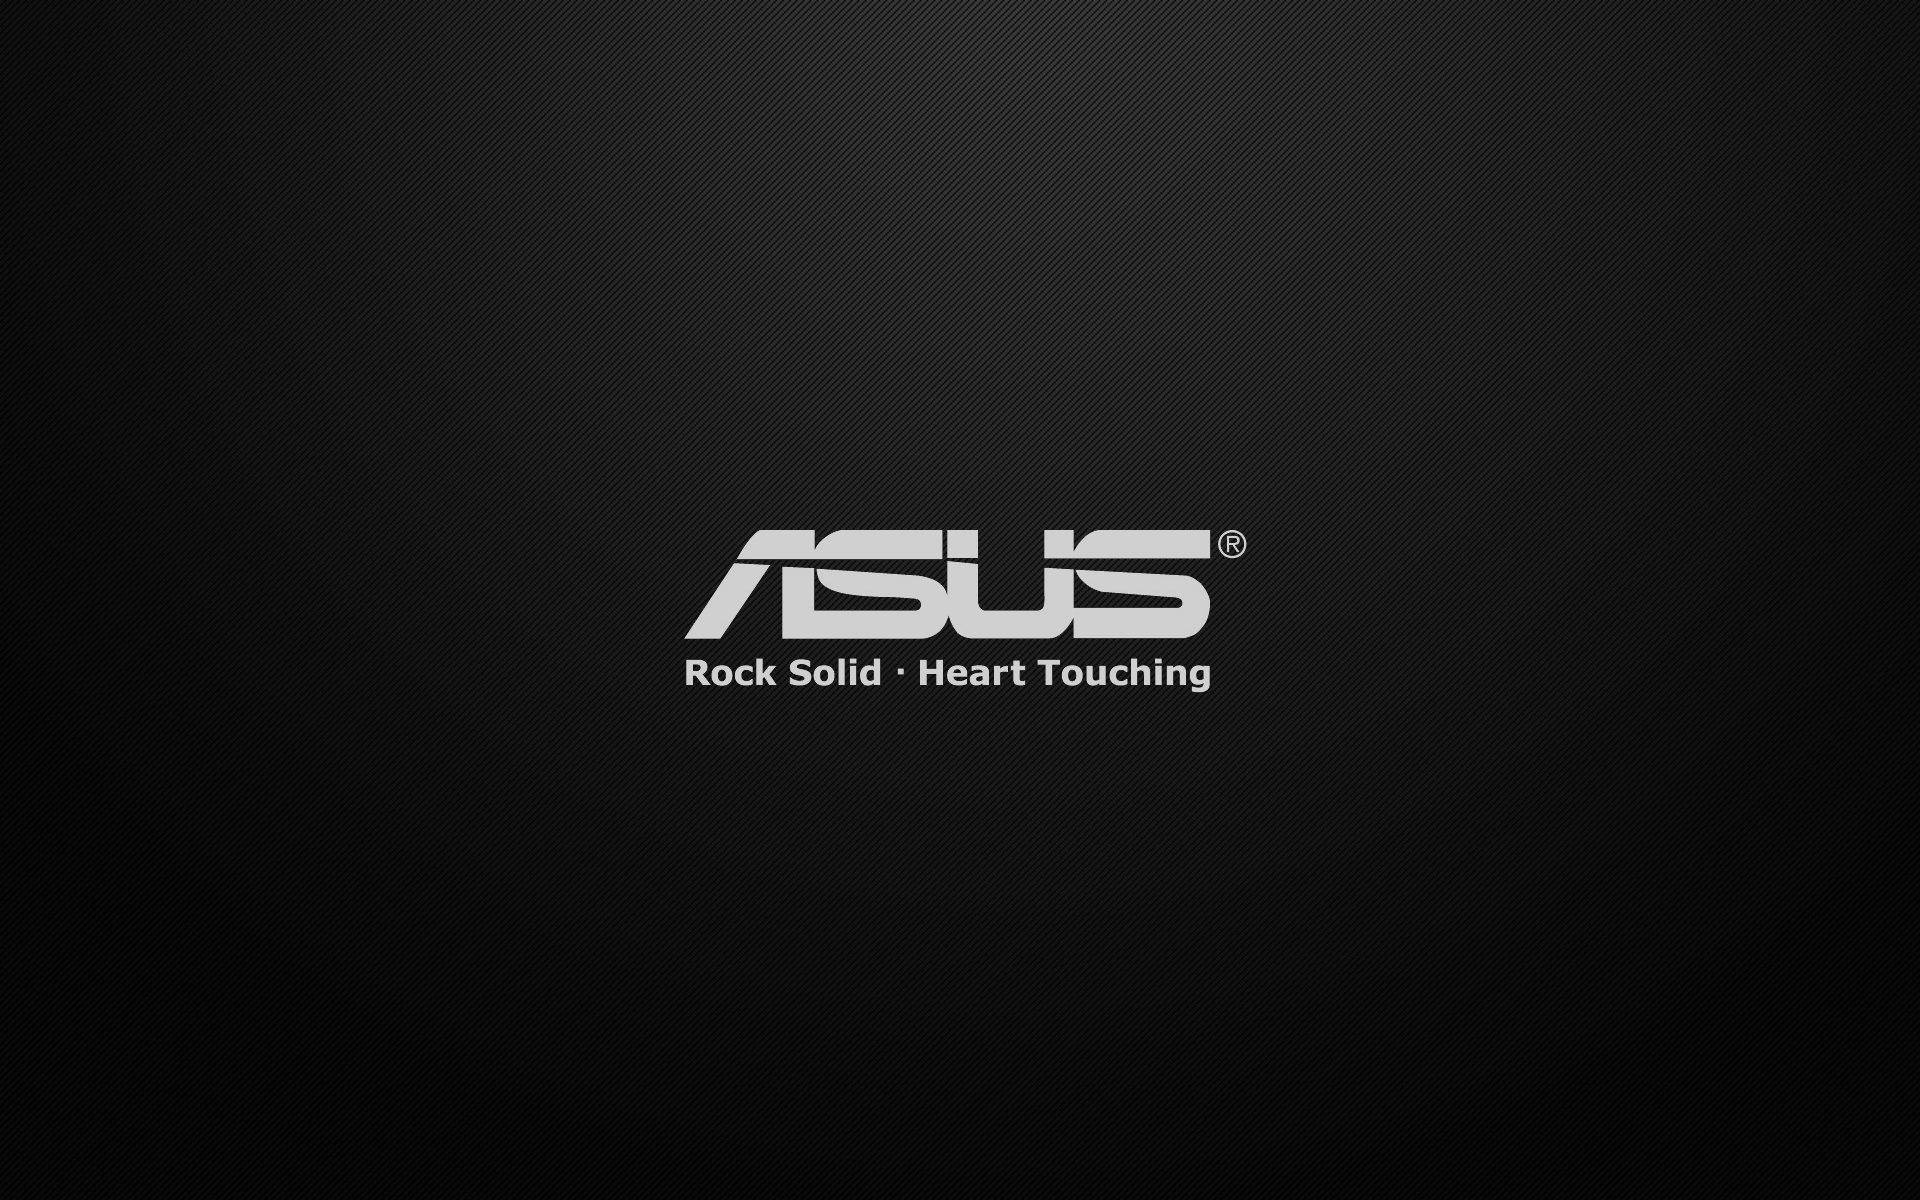 Asus Text Logo Hd Wallpaper